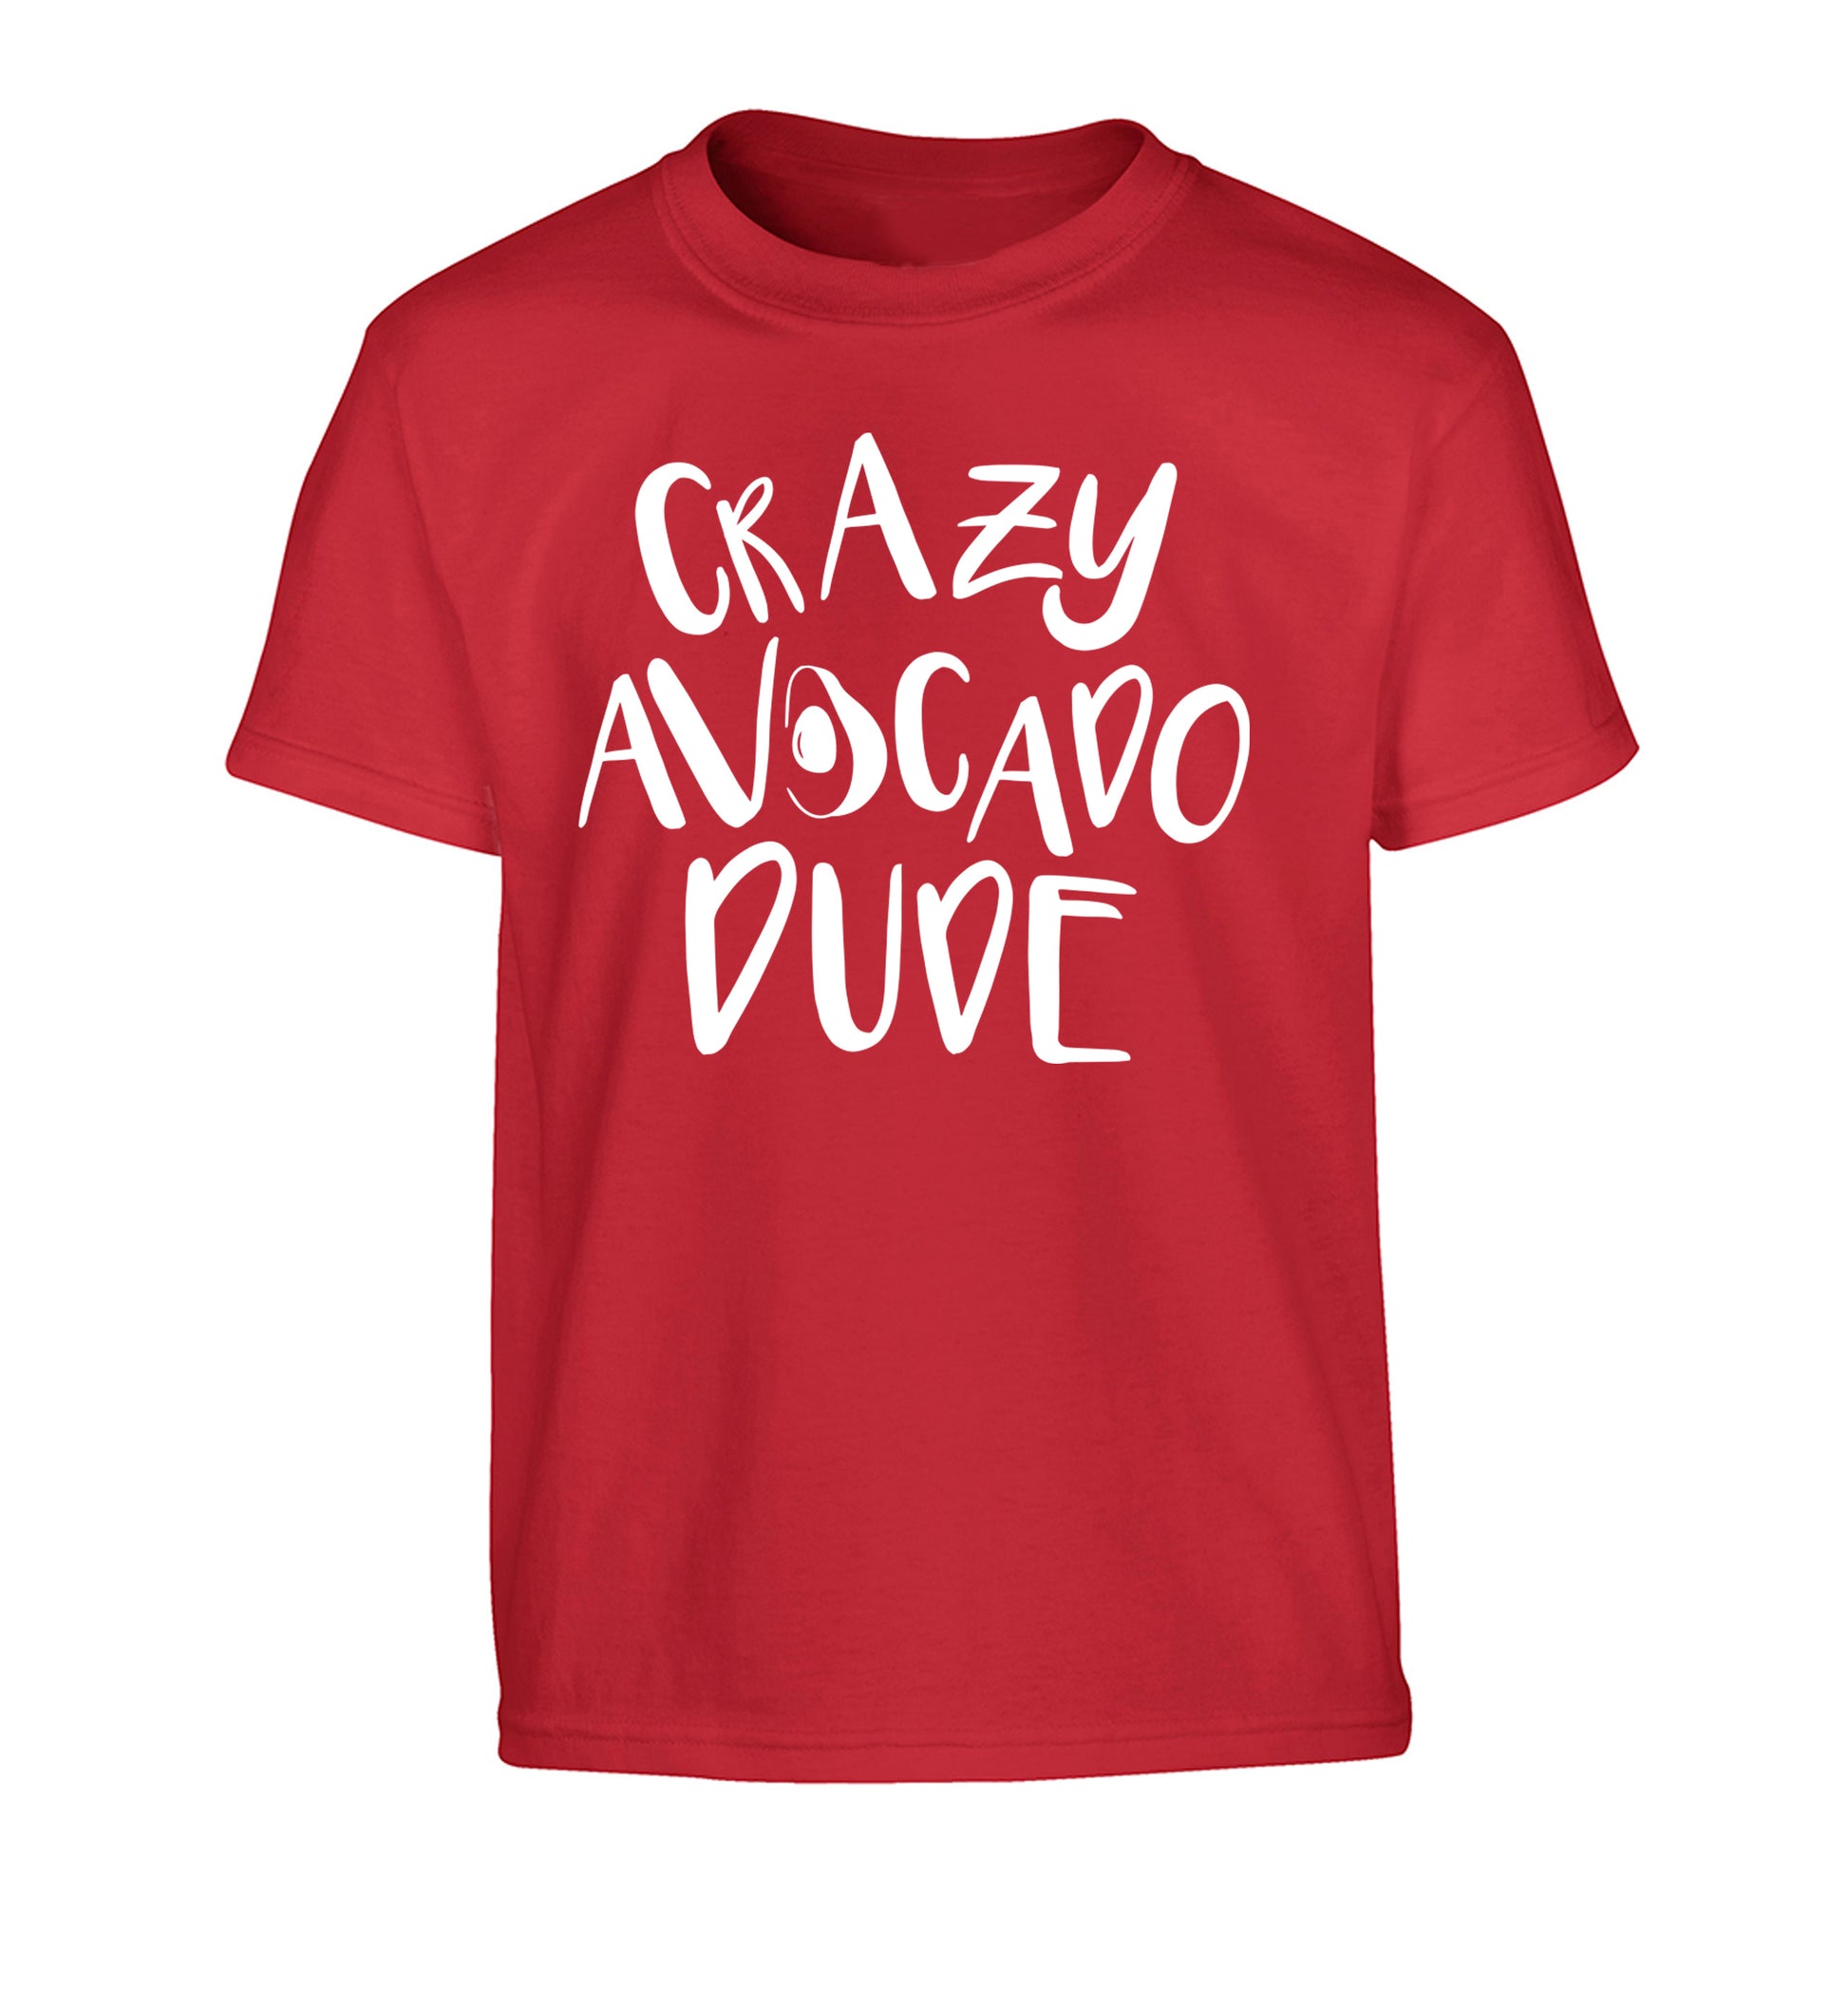 Crazy avocado dude Children's red Tshirt 12-14 Years